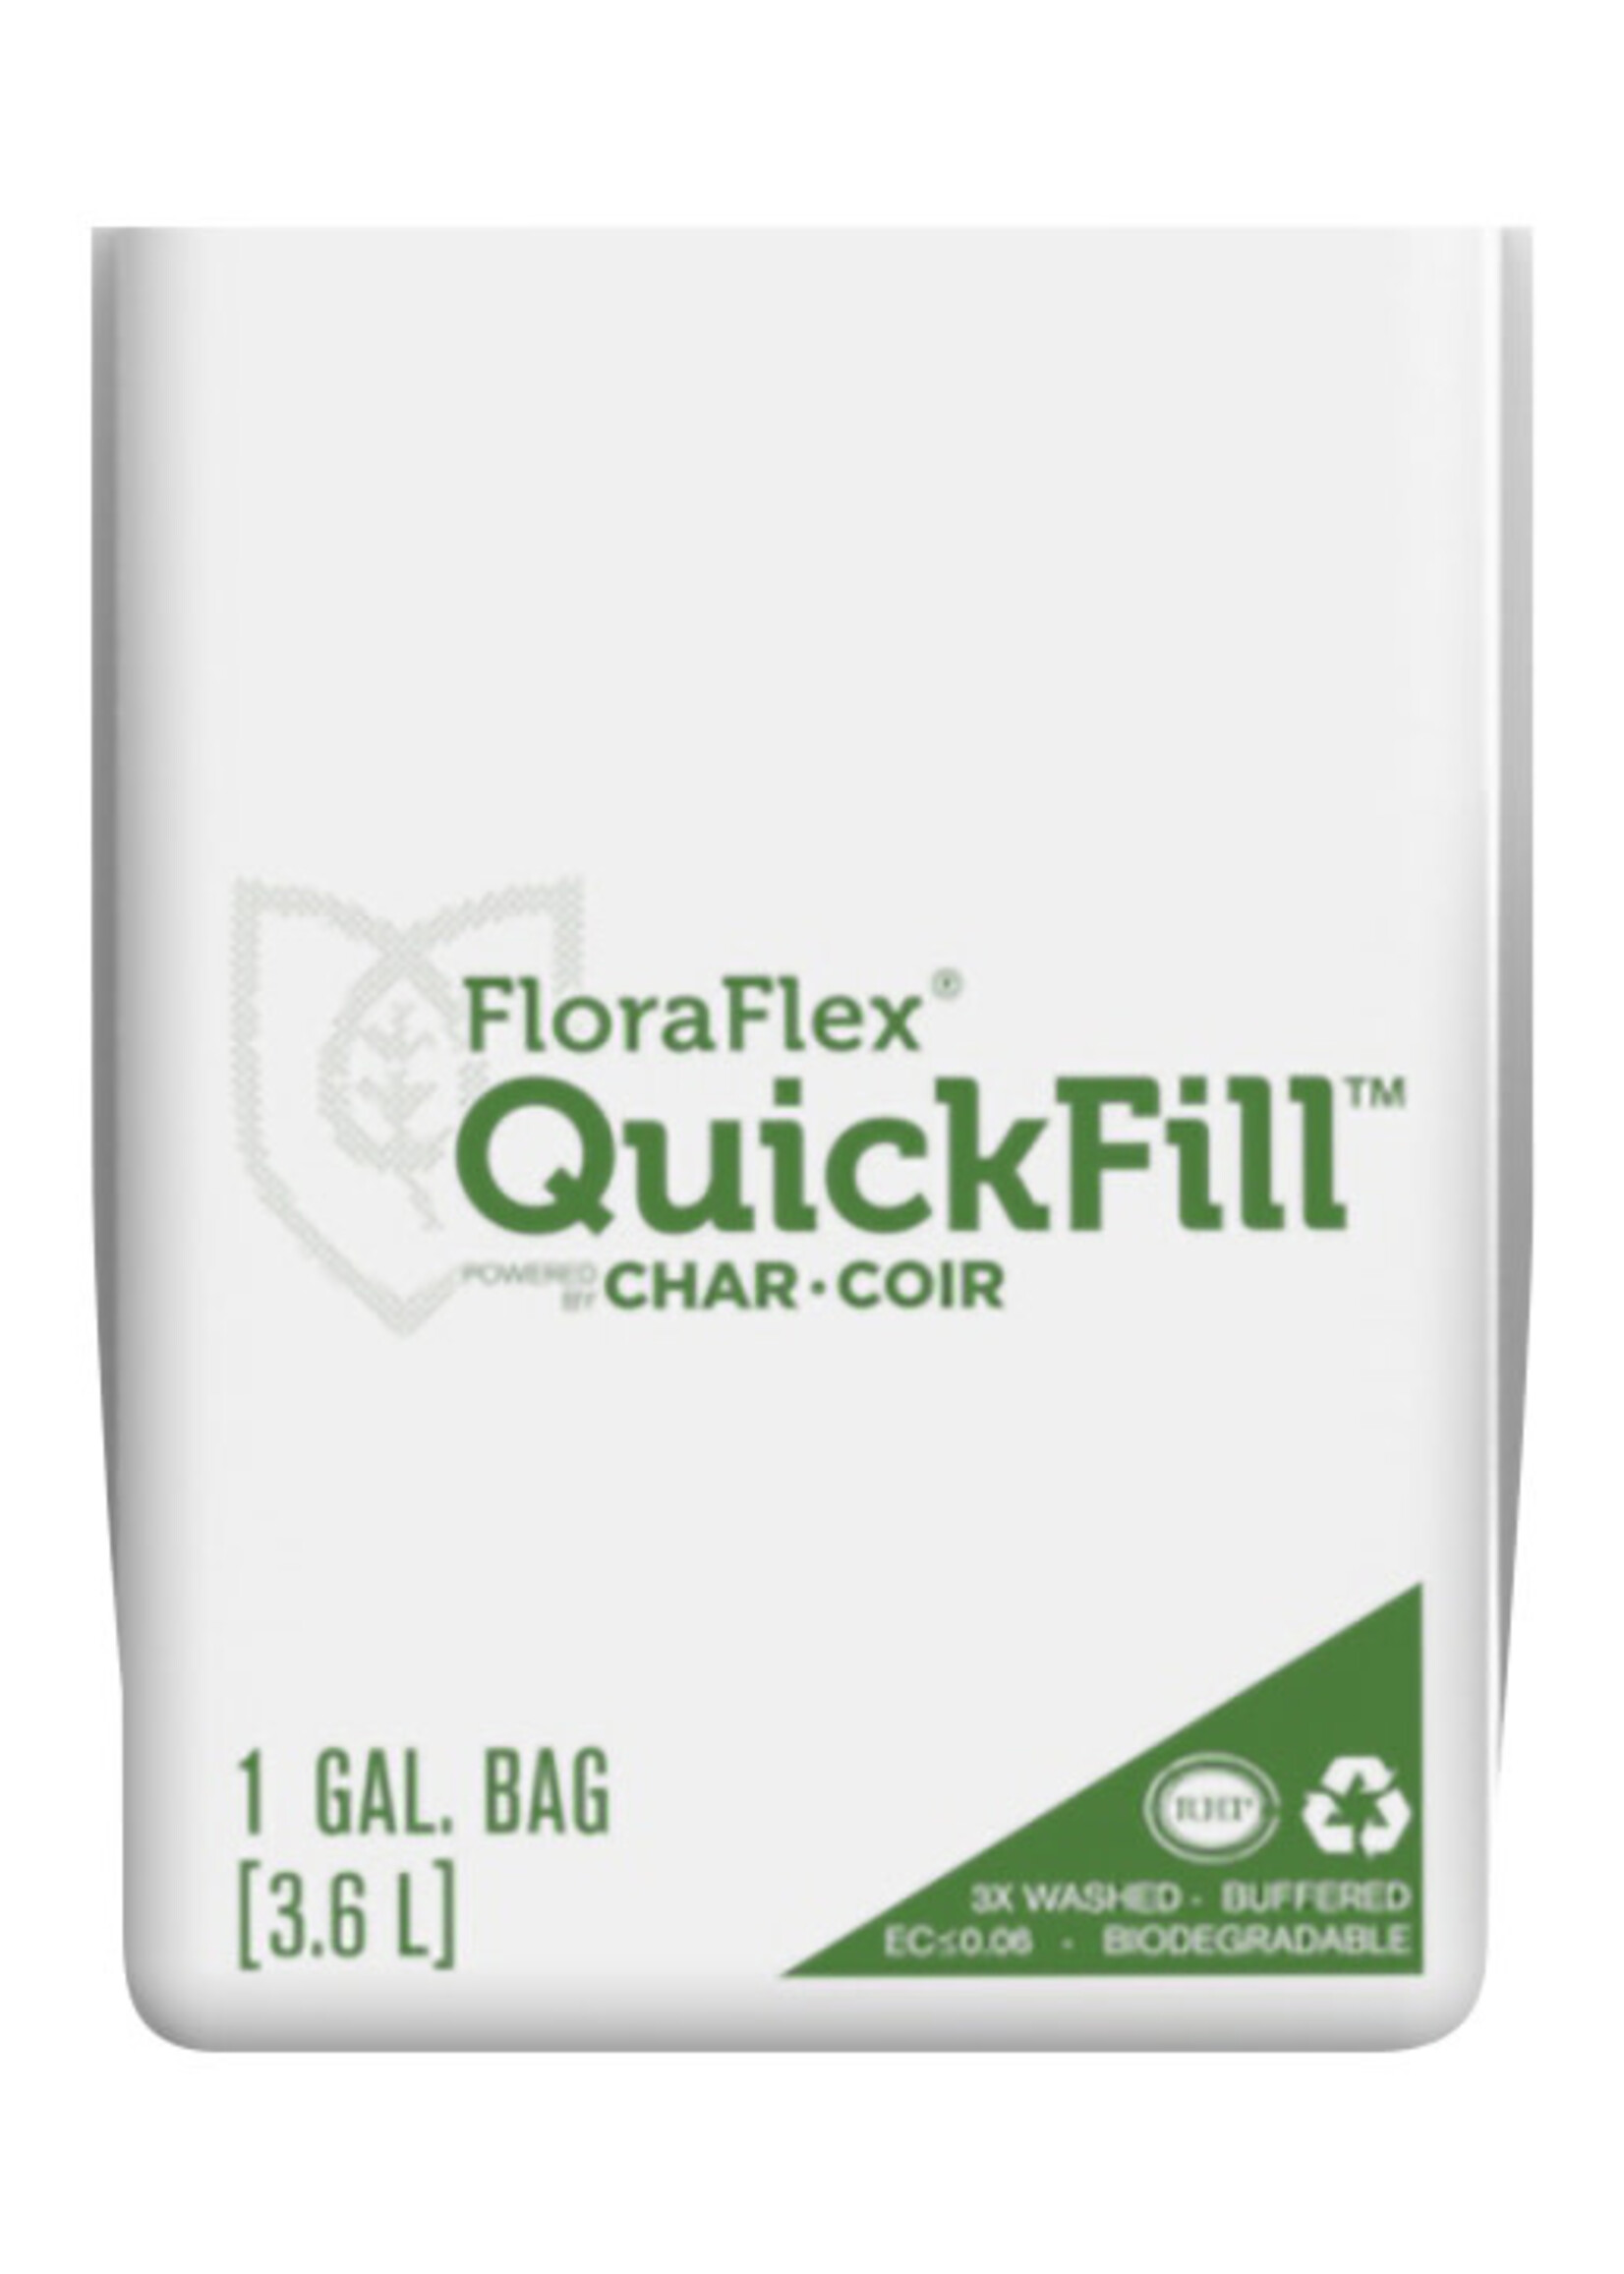 https://cdn.shoplightspeed.com/shops/624881/files/19317181/1652x2313x2/floraflex-floraflex-quickfill-bags-1-gallon-bag-45.jpg